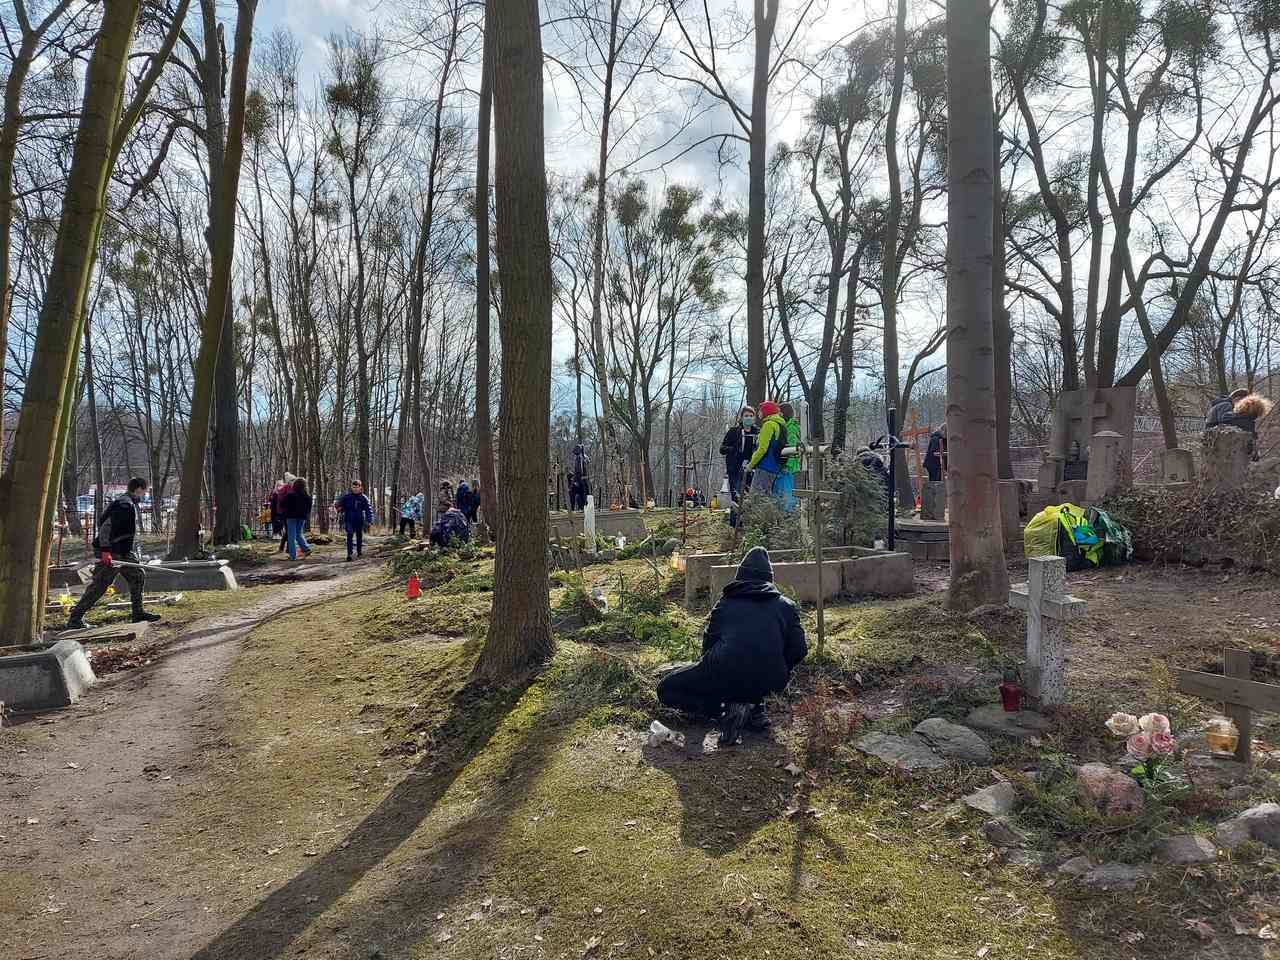 Grupa osób sprzątająca zaniedbaną nekropolię. Na około stare drzewa, zieleń, słońce prześwietla przez gałęzie drzew.